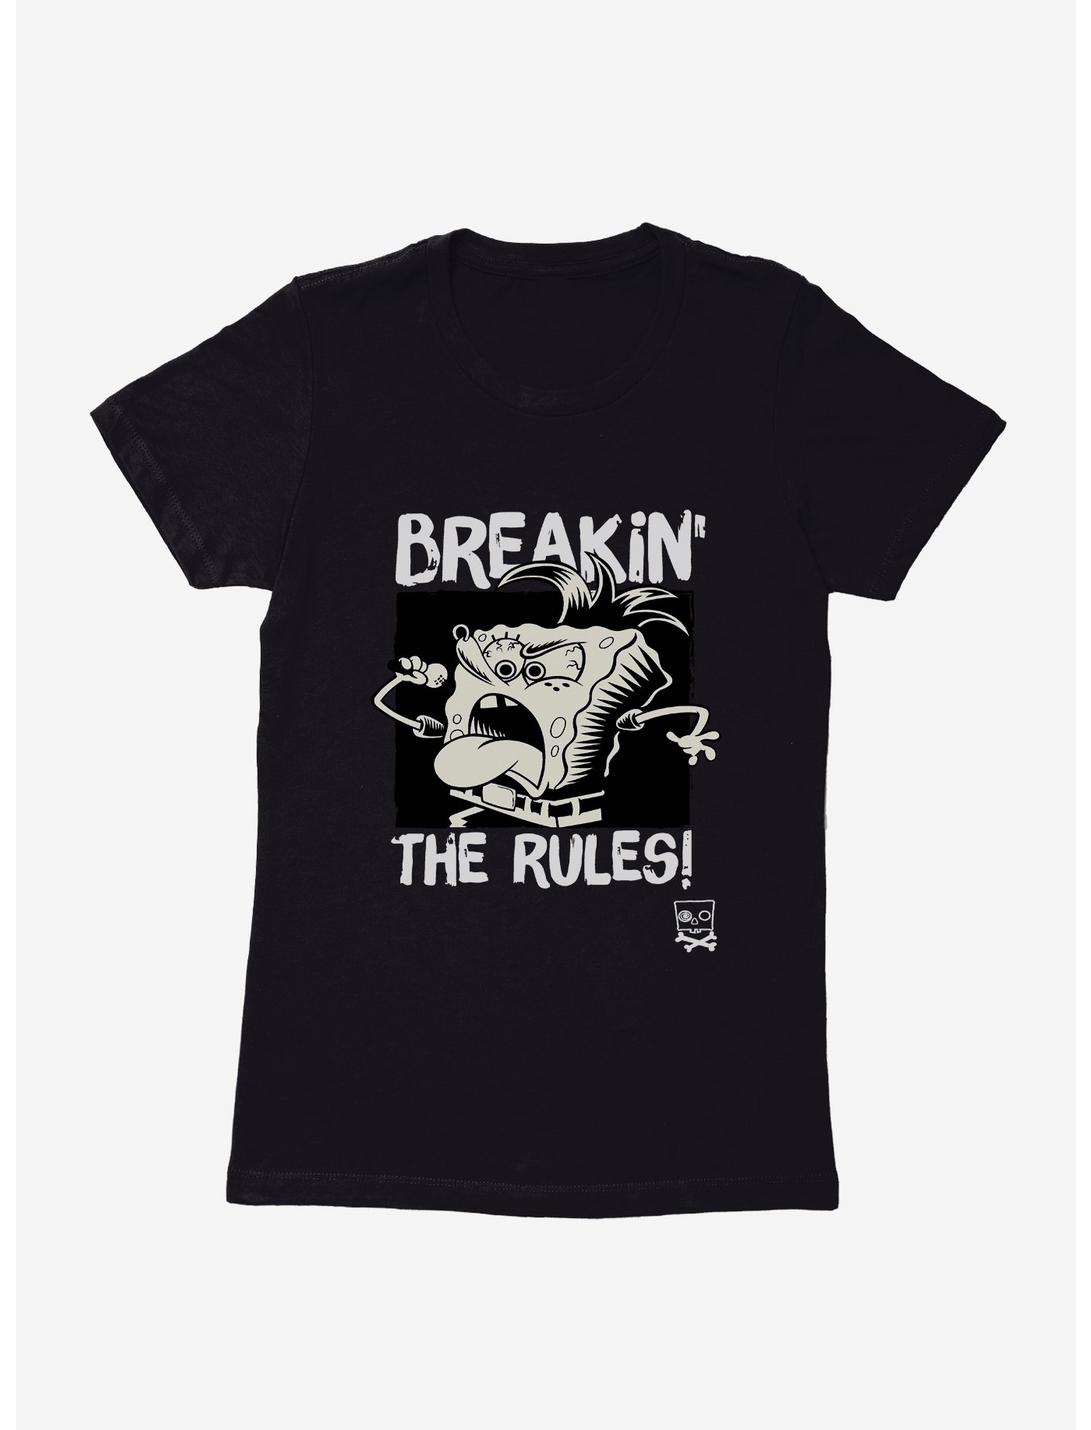 SpongeBob SquarePants Breakin' The Rules Womens T-Shirt, BLACK, hi-res